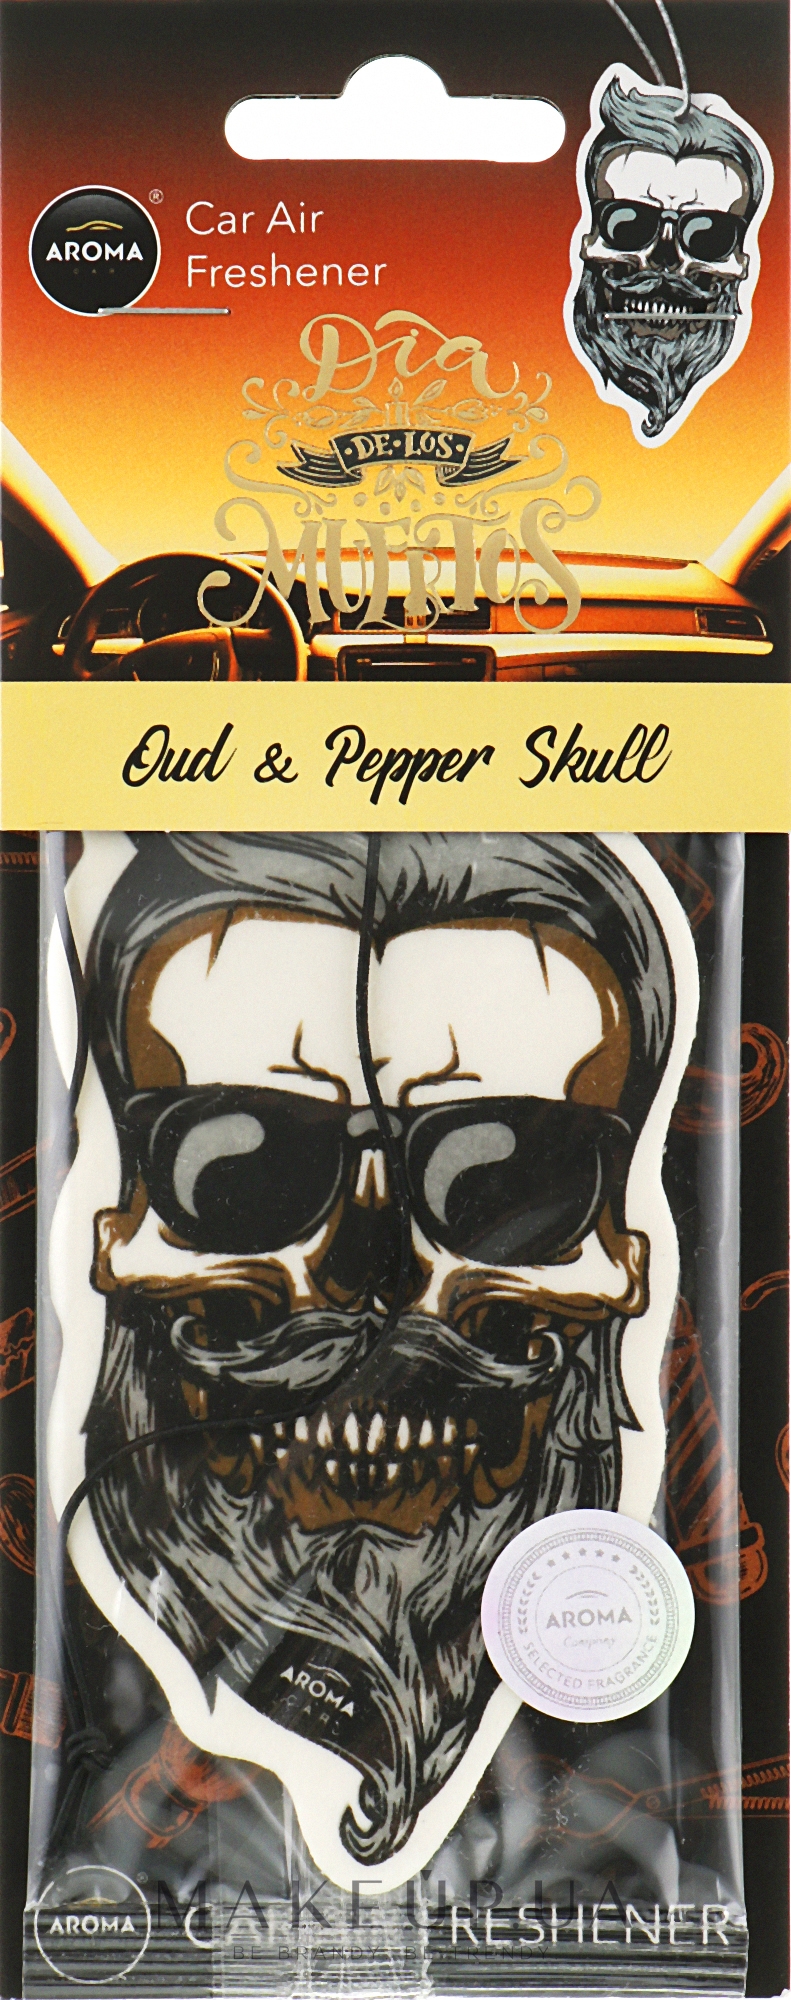 Ароматизатор для авто "Oud & Pepper Skull" - Aroma Car Dia De Los Muertos — фото 5g